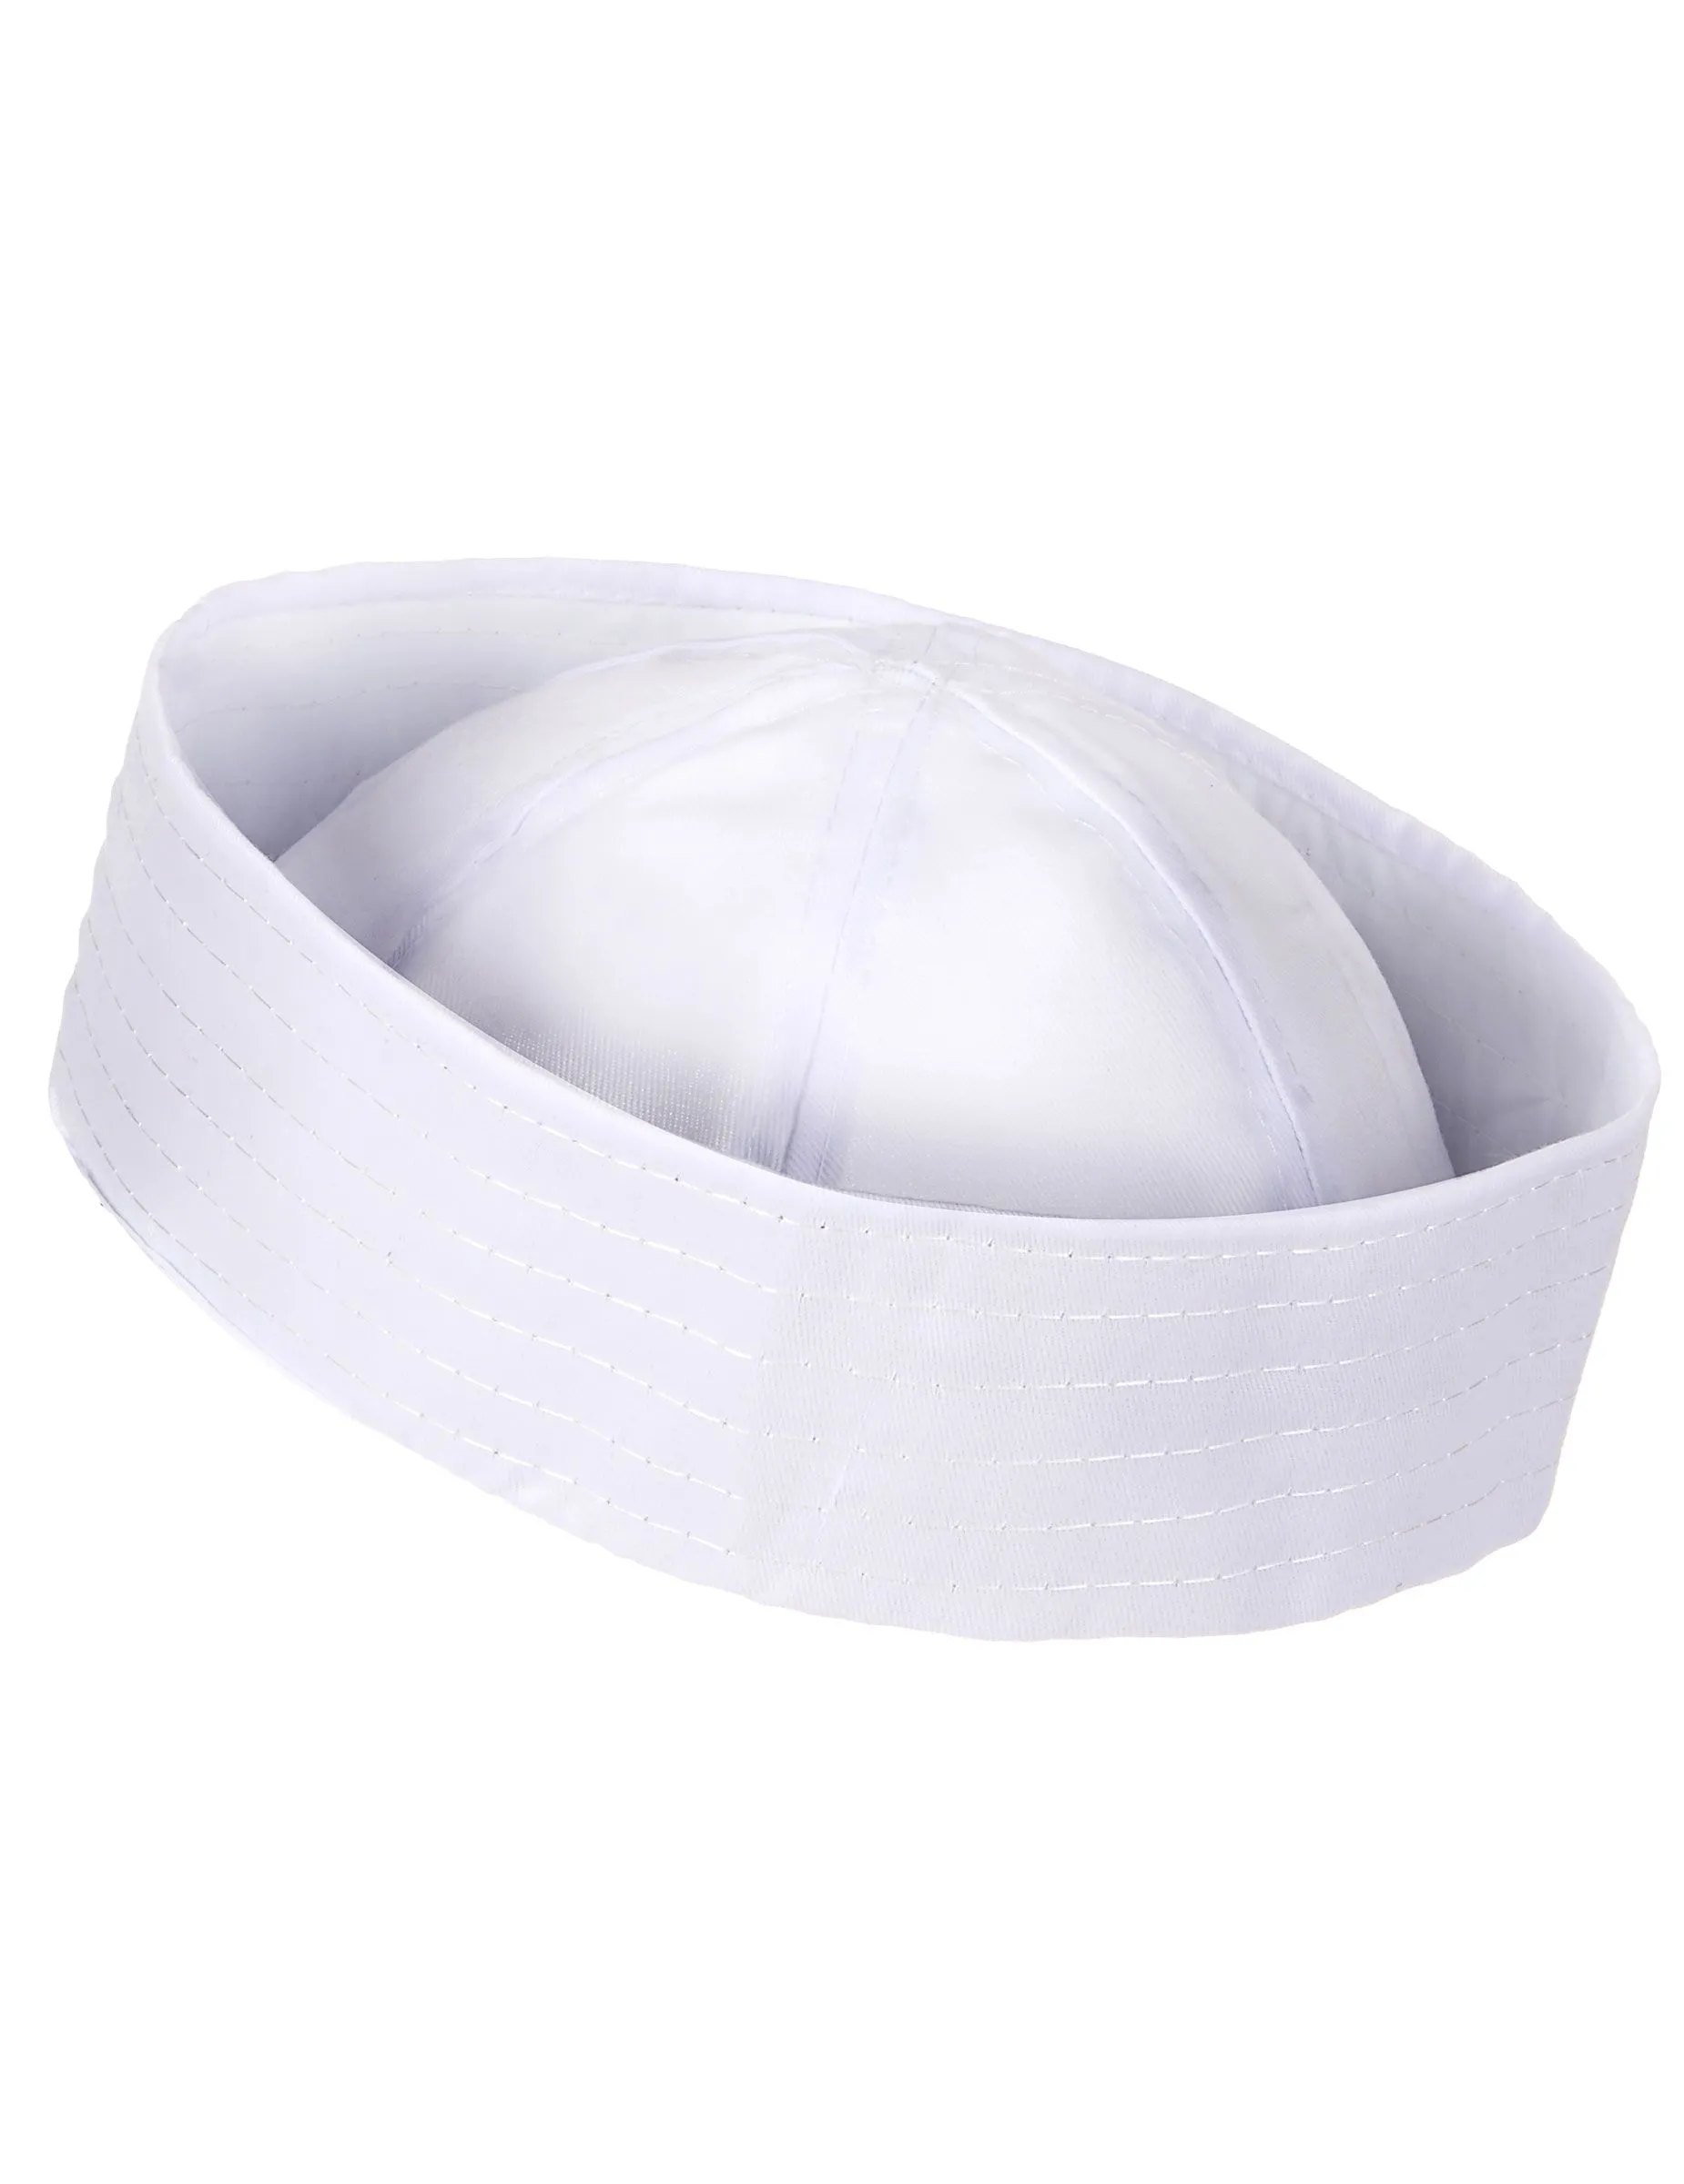 Sombrero blanco de panadero